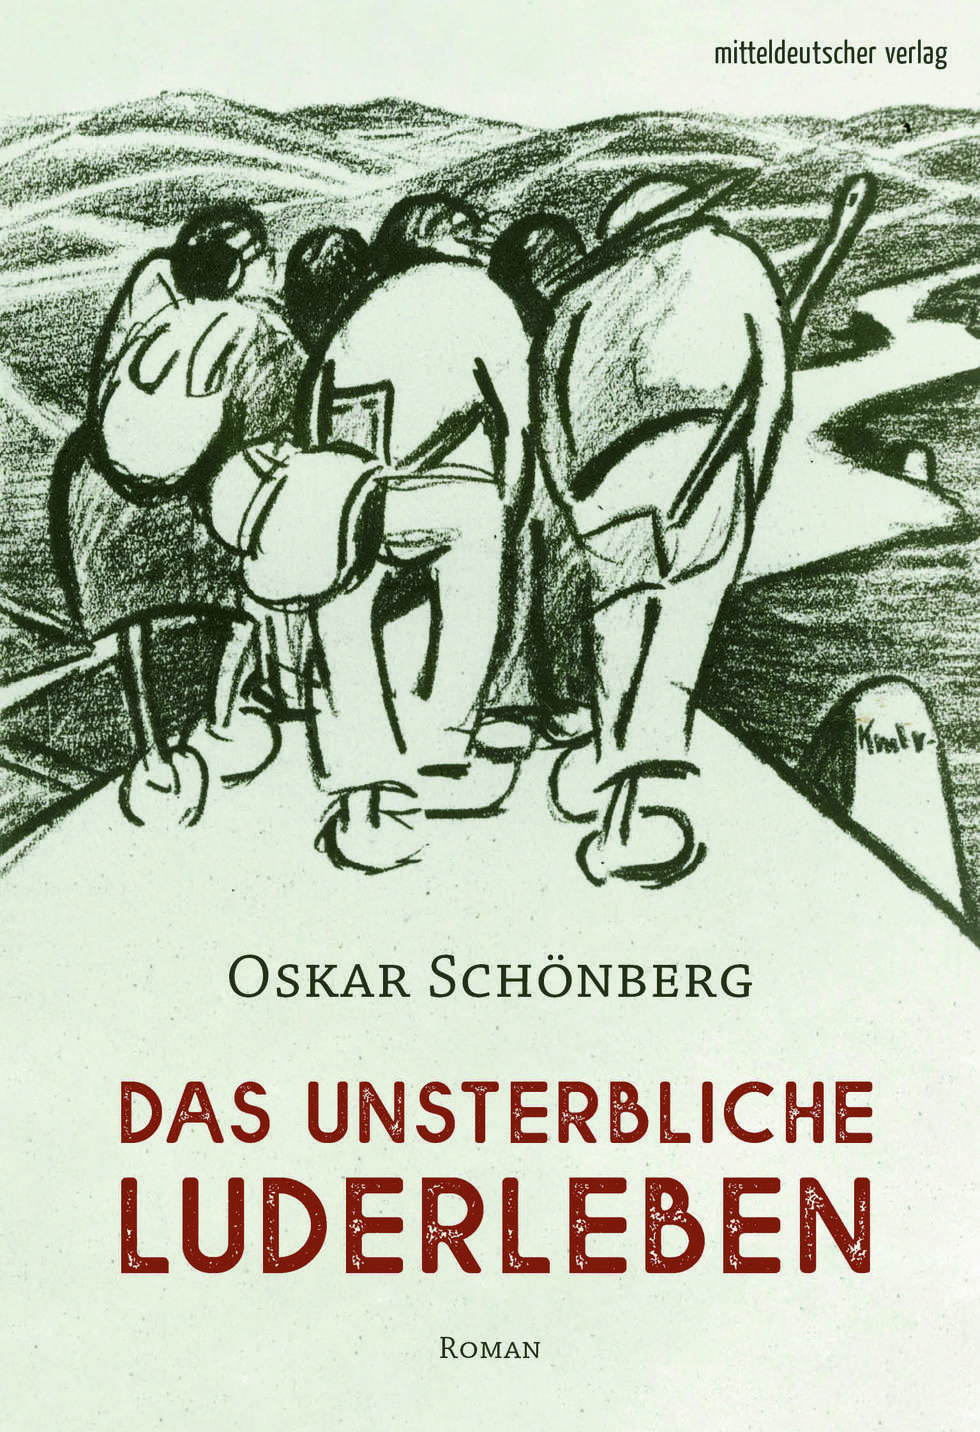 Cover Das unsterbliche Luderleben Oskar Schönberg(c) Mitteldeutscher Verlag.jpg